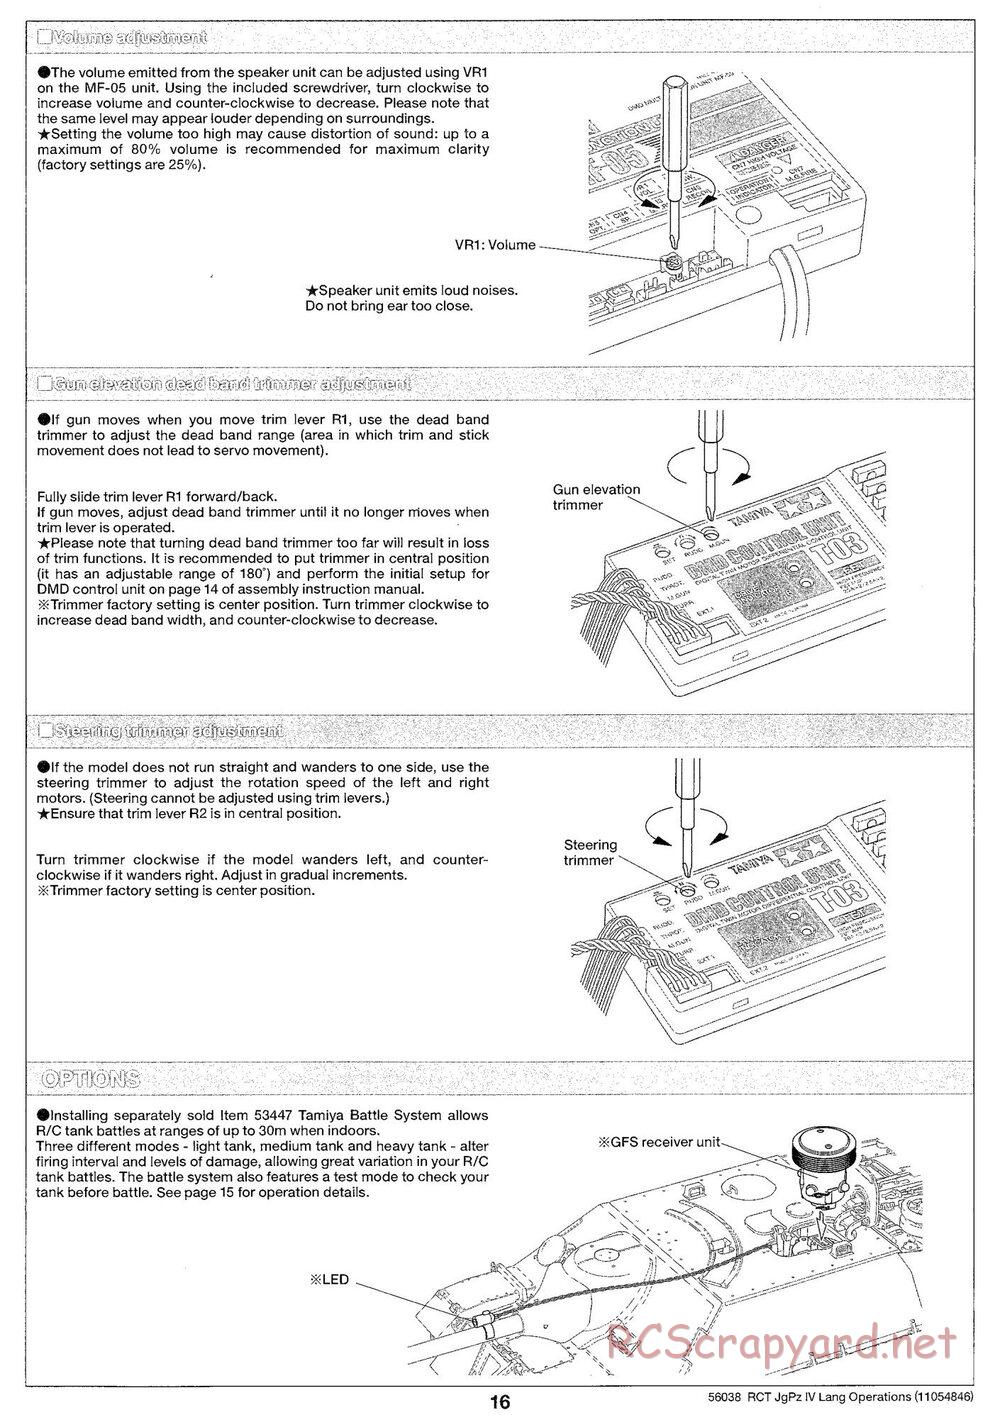 Tamiya - Jagdpanzer IV/70(V) Lang - 1/16 Scale Chassis - Operation Manual - Page 7